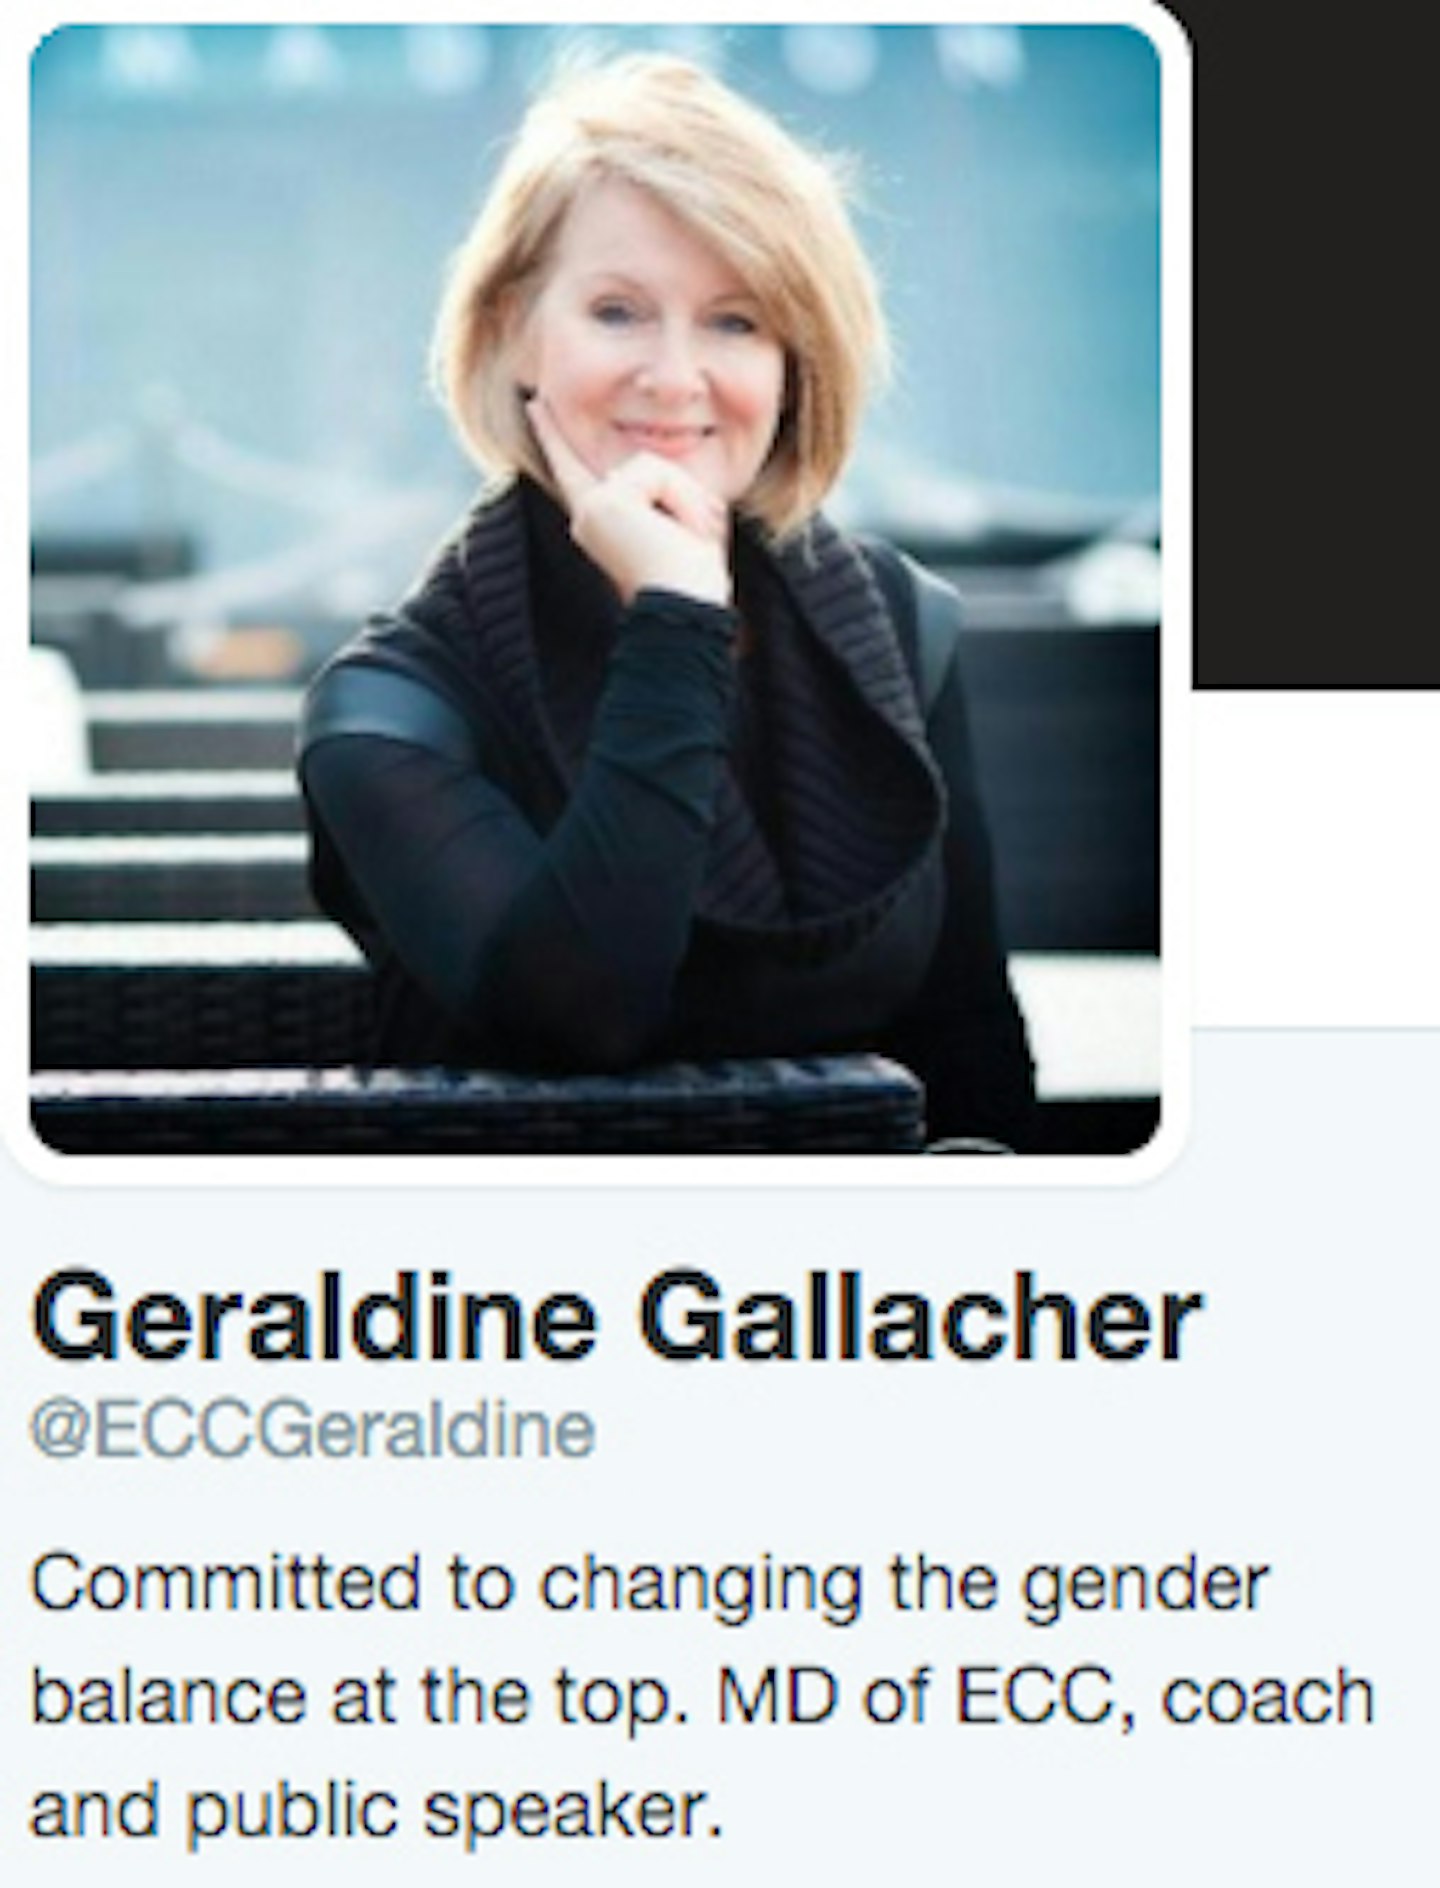 Geraldine-Gallacher-ECC-Twitter